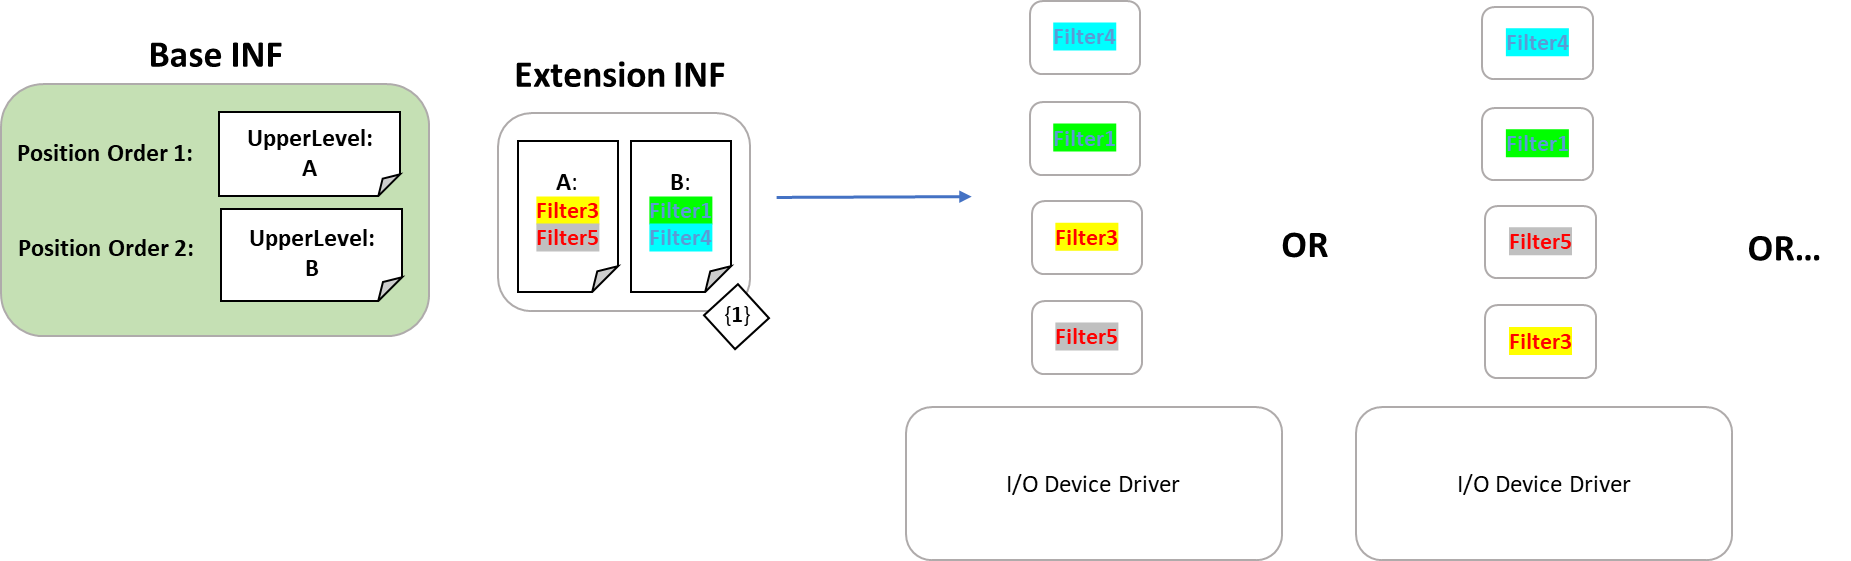 Instalación de controladores de dispositivos que se muestran como un orden de pila de dispositivos que combina las listas de controladores de filtro al tiempo que respeta el posicionamiento y la ordenación deseados.